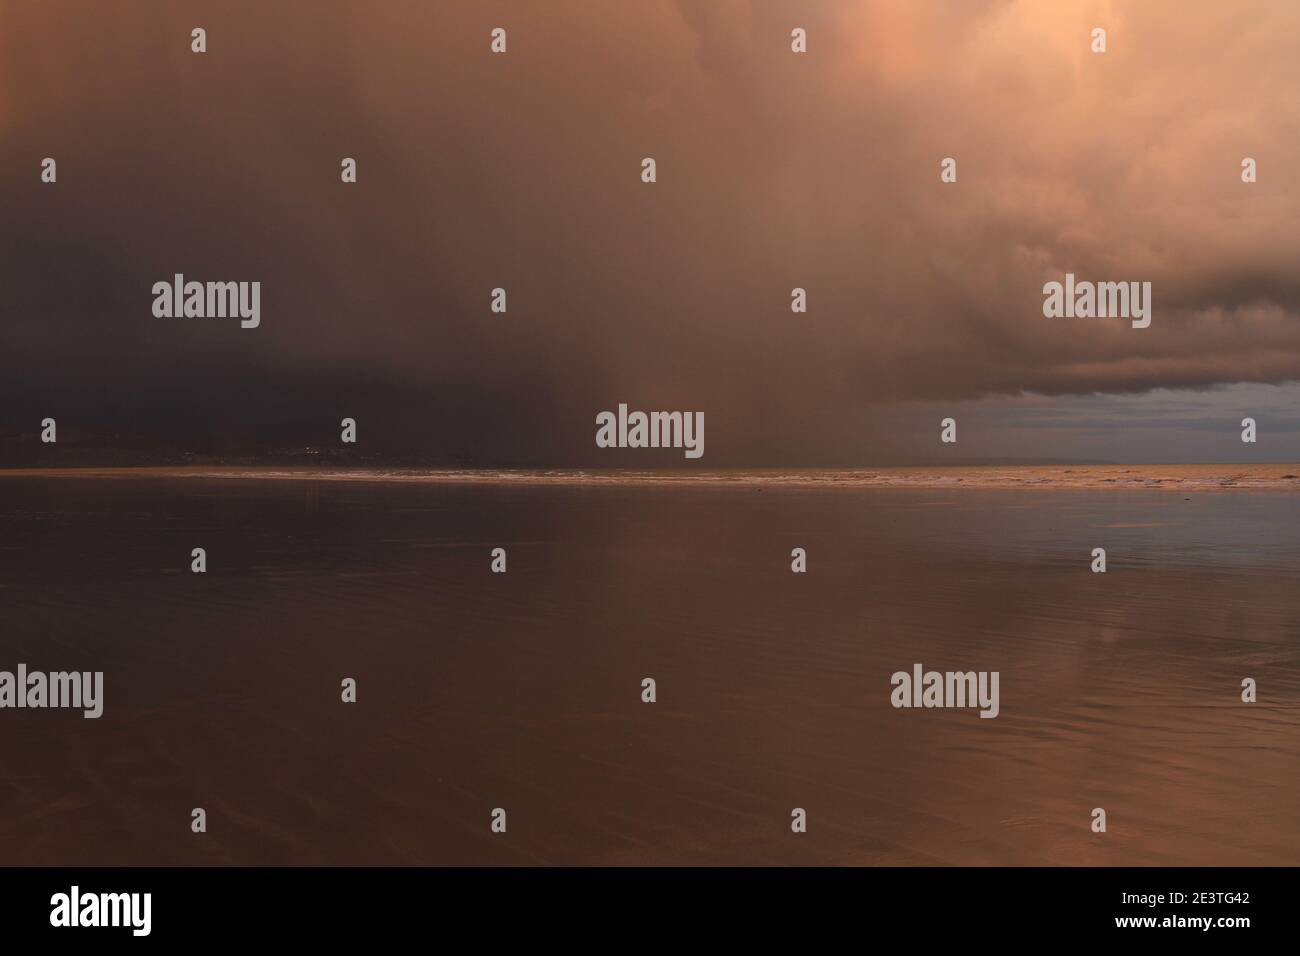 Storm Cloud bewegt sich am Black Rock Sands über den Strand und erzeugt einen dramatischen Himmel, wobei orange graue Wolken eine unheimliche Szene erzeugen Stockfoto